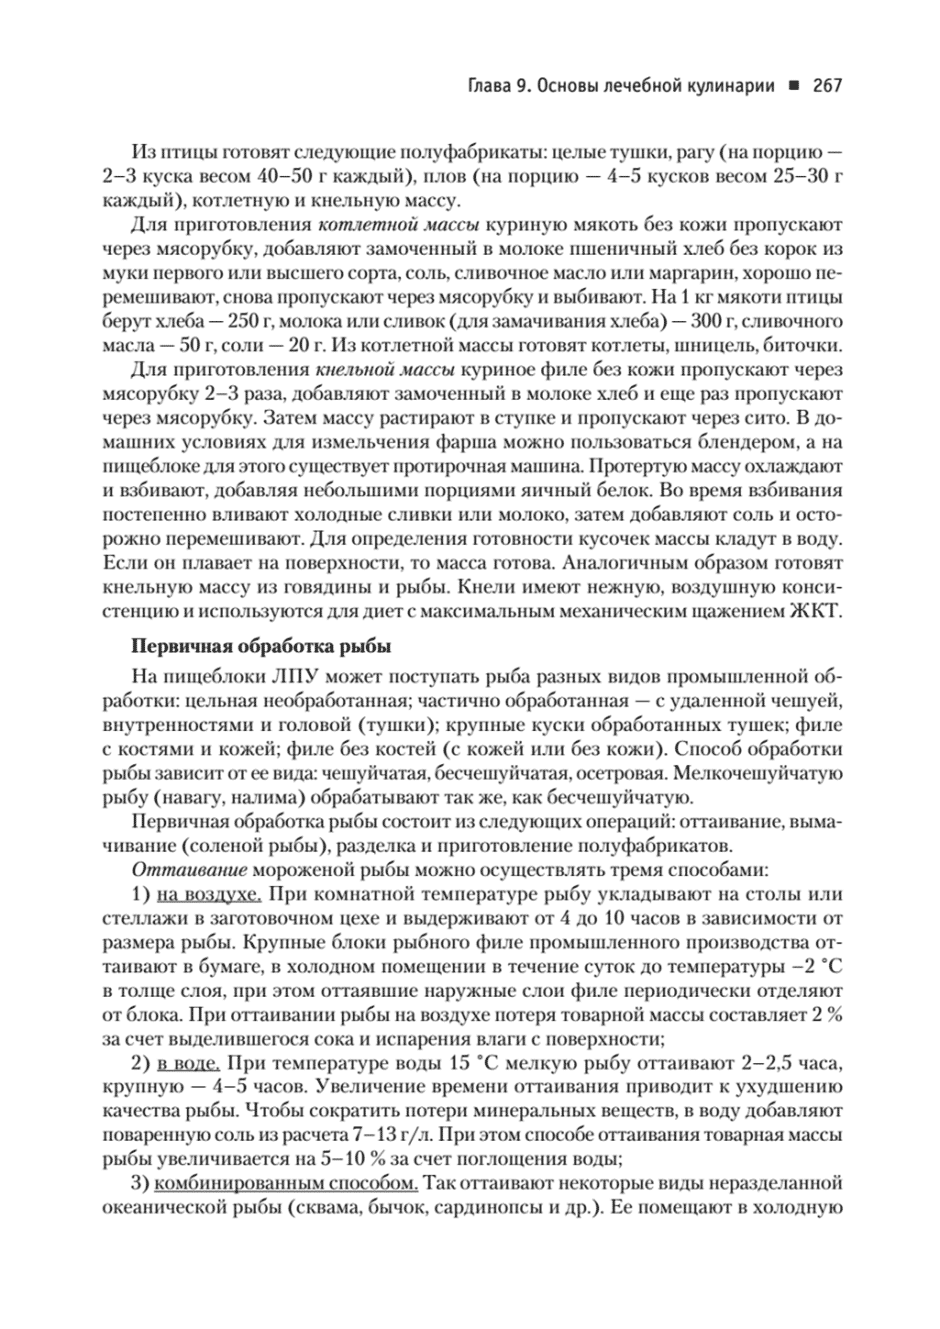 Пример страницы из книги "Диетология" - Барановский А. Ю.